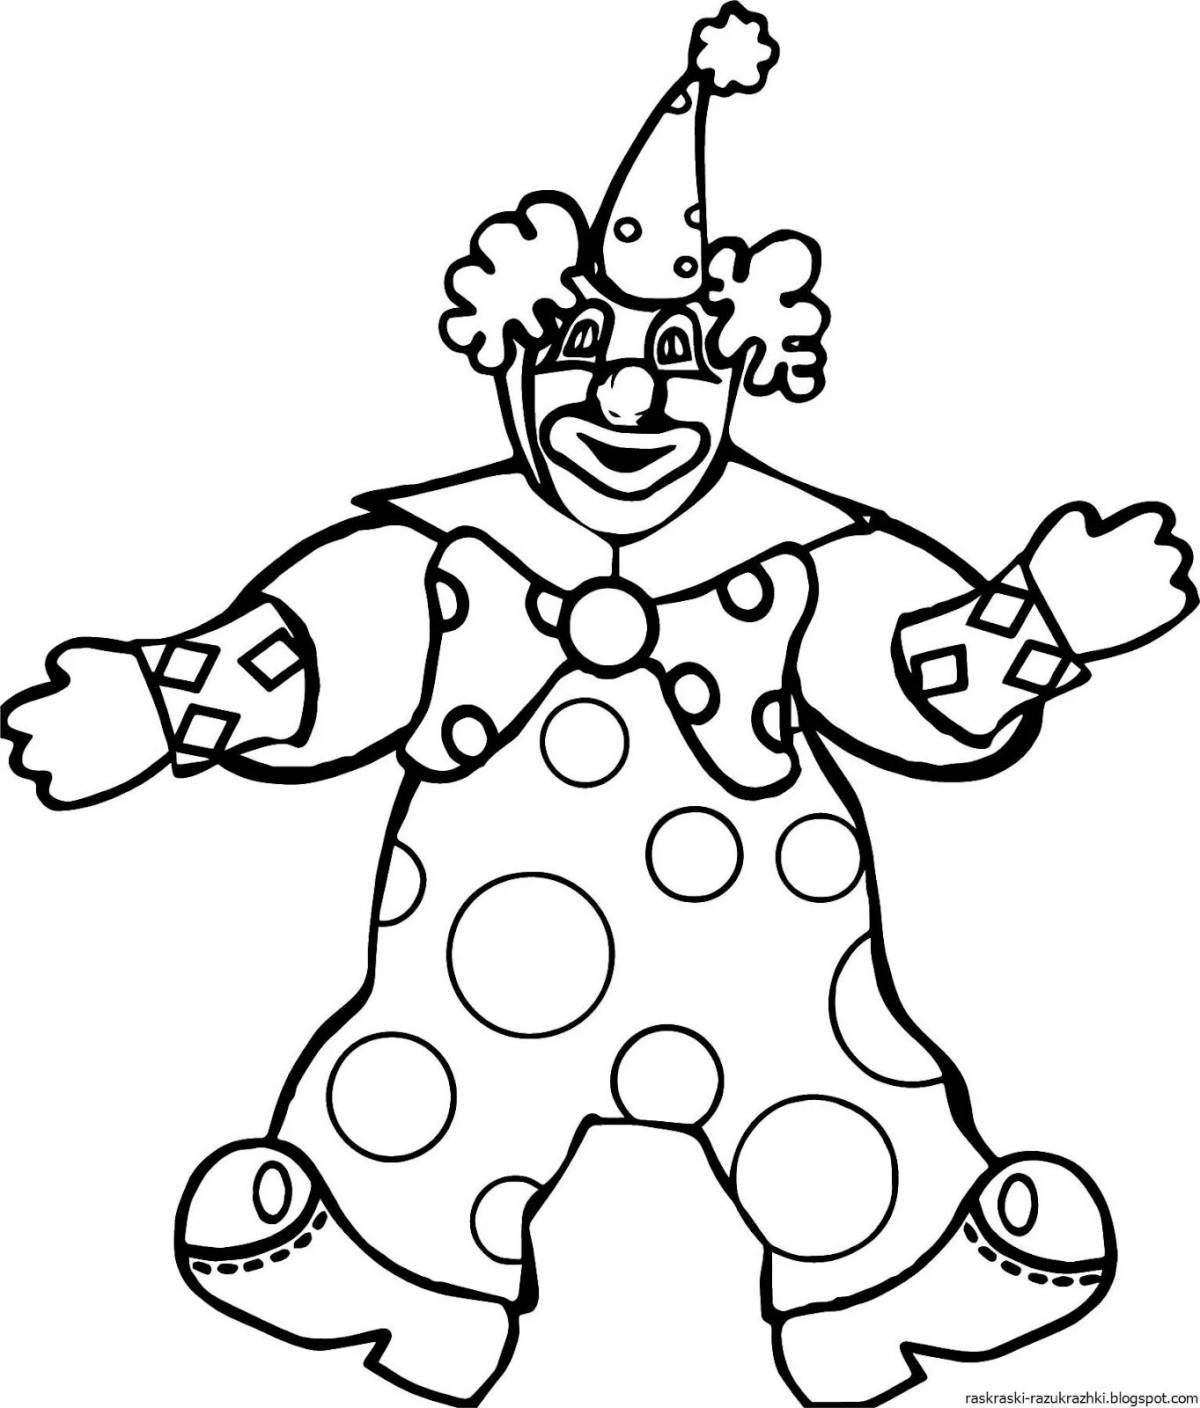 Остроумный клоун раскраски для детей